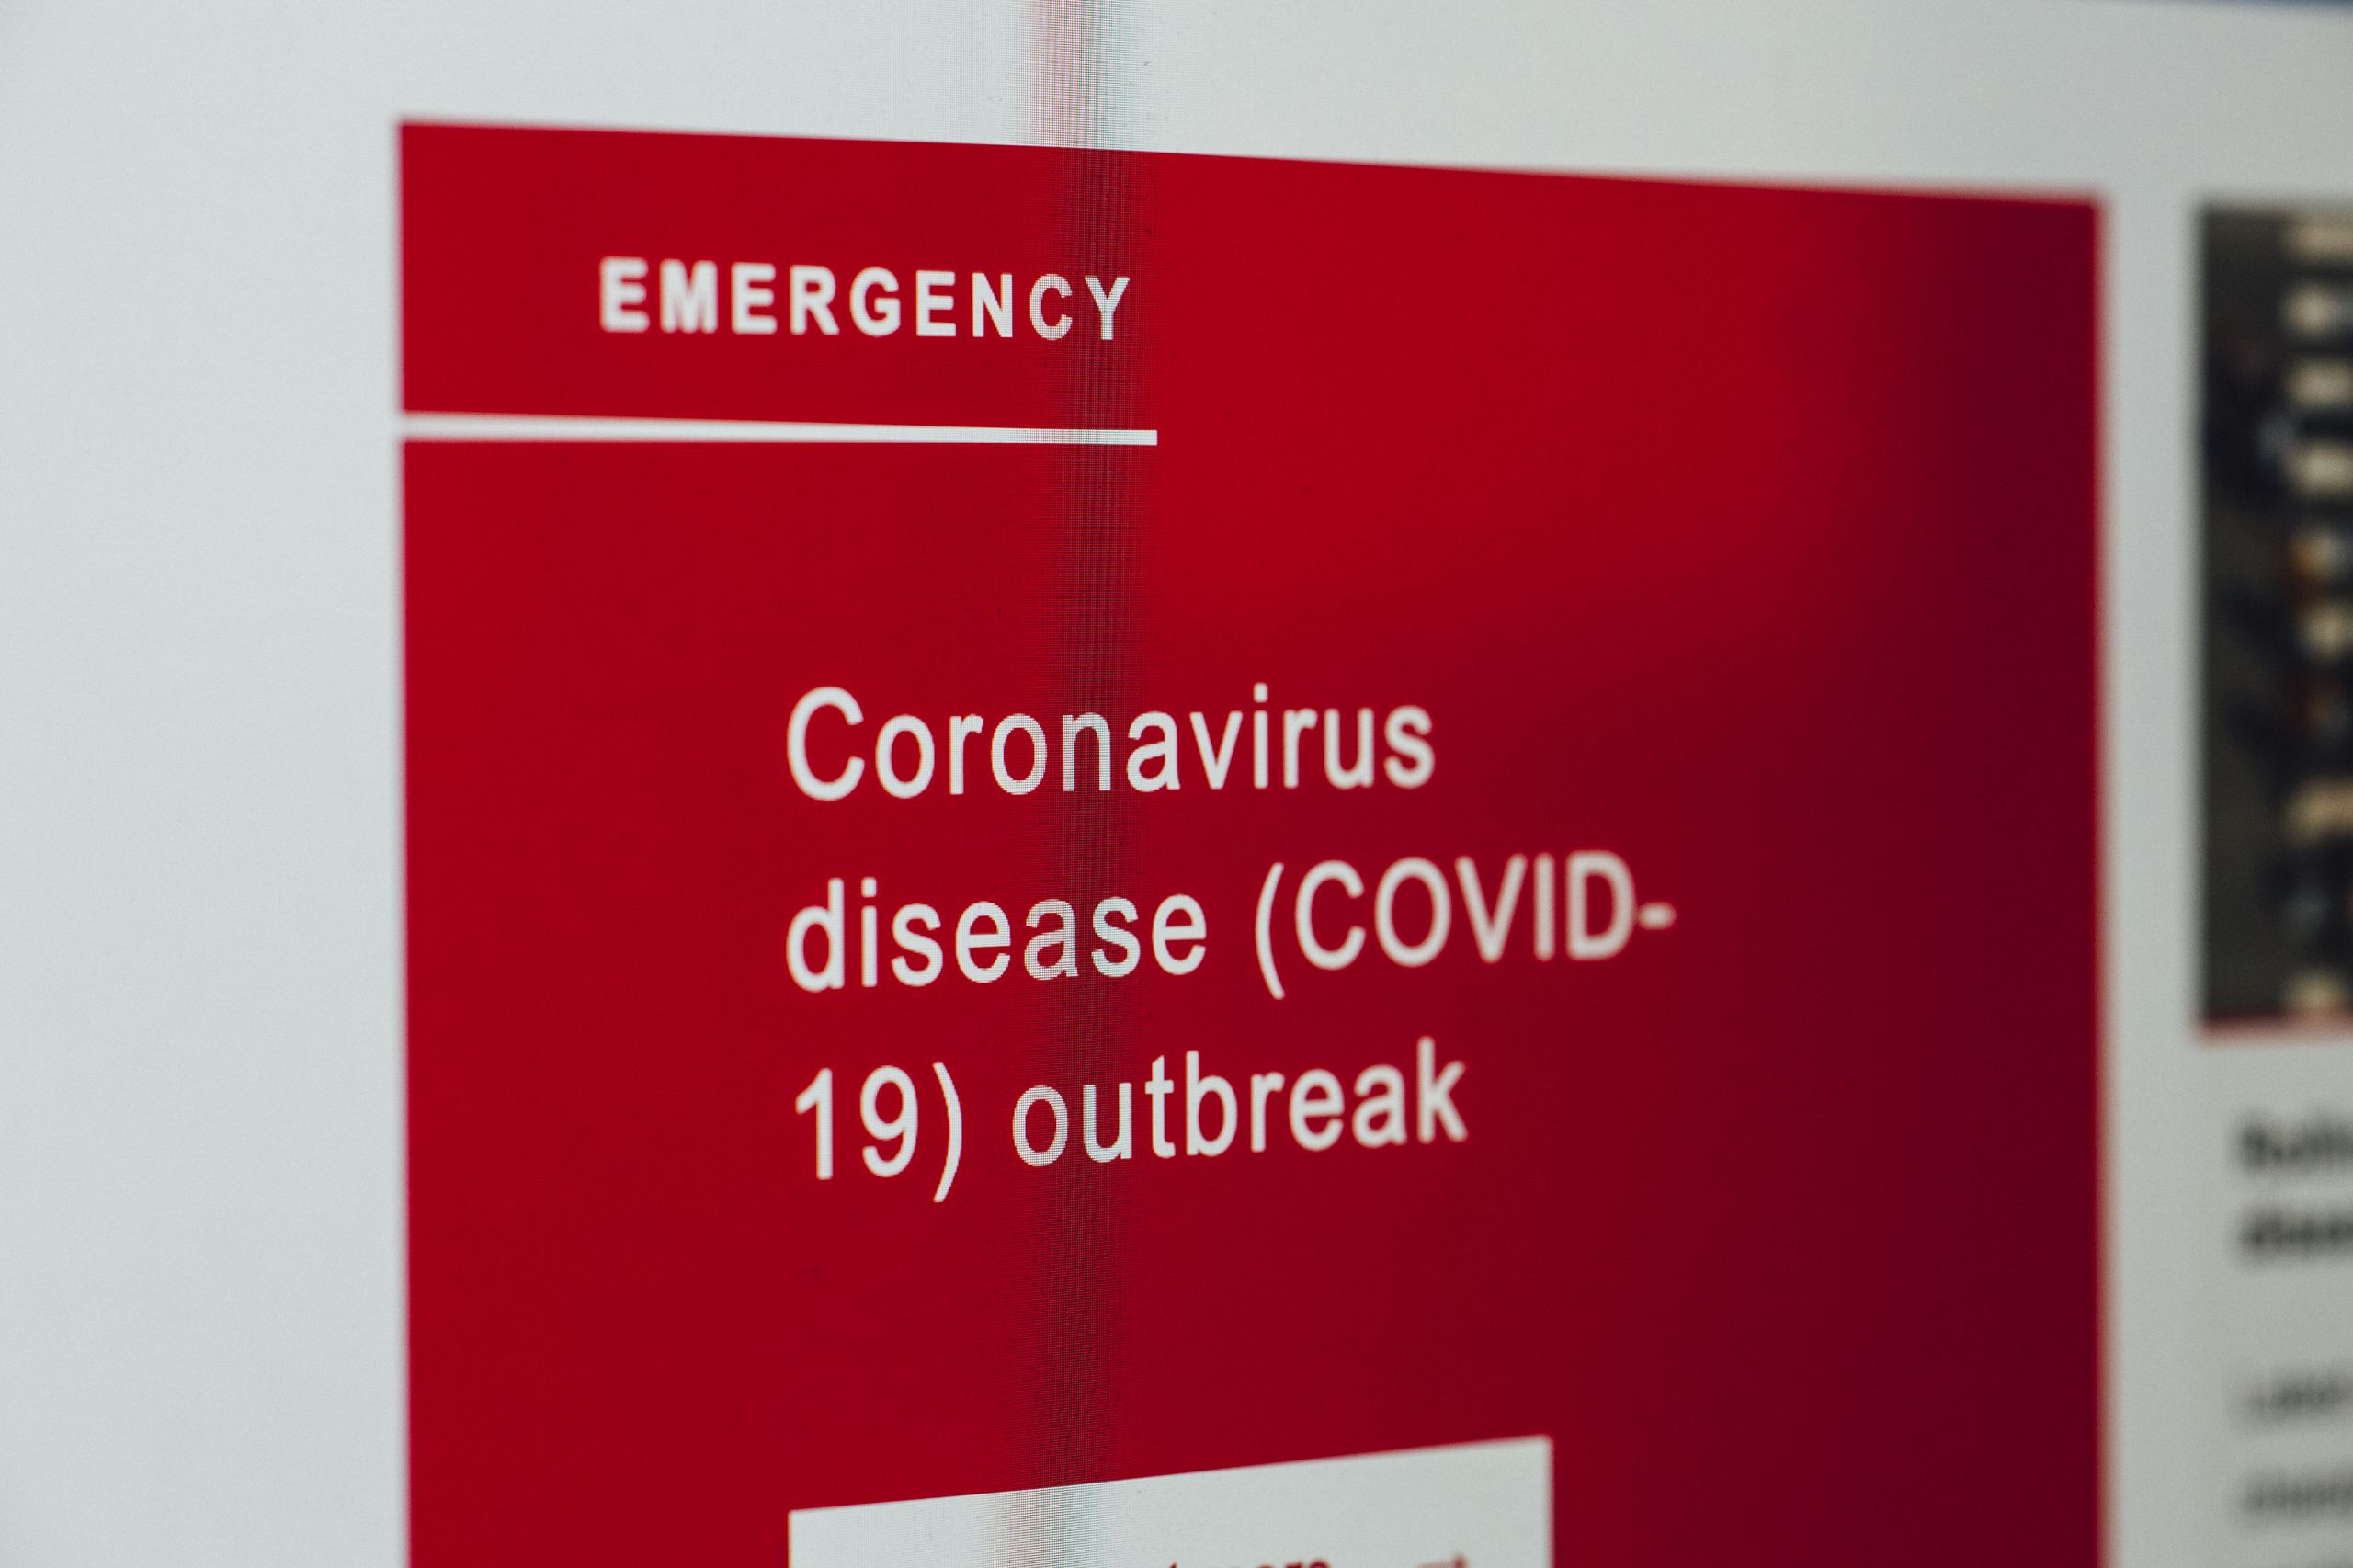 ΠΟΥ: Ο κορονοϊός τείνει να γίνει μια νόσος που συνιστά απειλή παρόμοια της εποχικής γρίπης